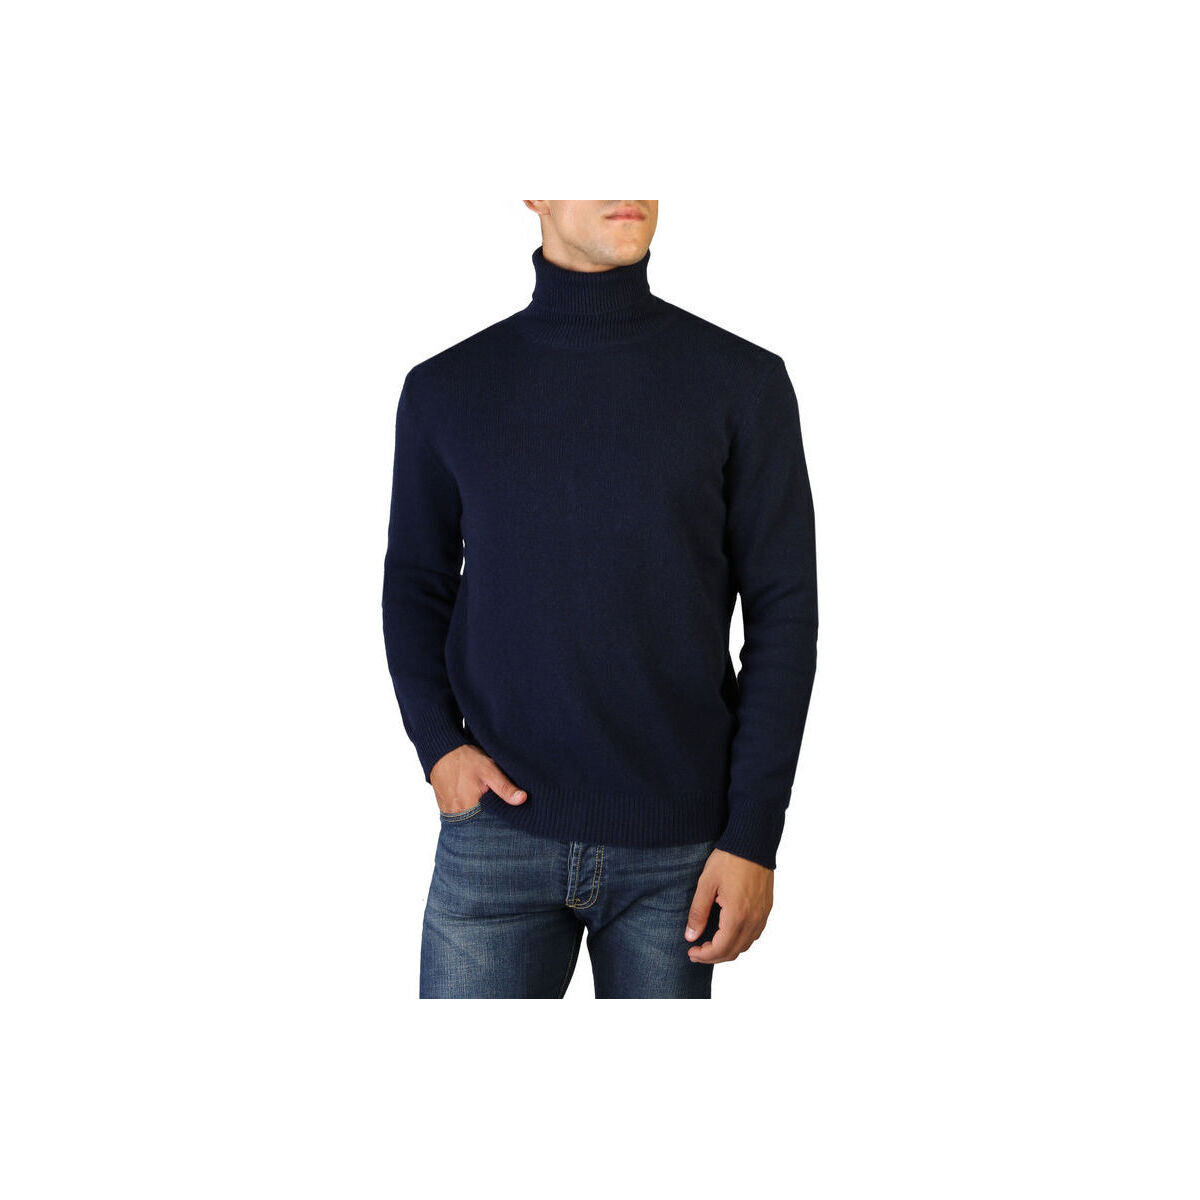 Odjeća Muškarci
 Puloveri 100% Cashmere Jersey roll neck Plava